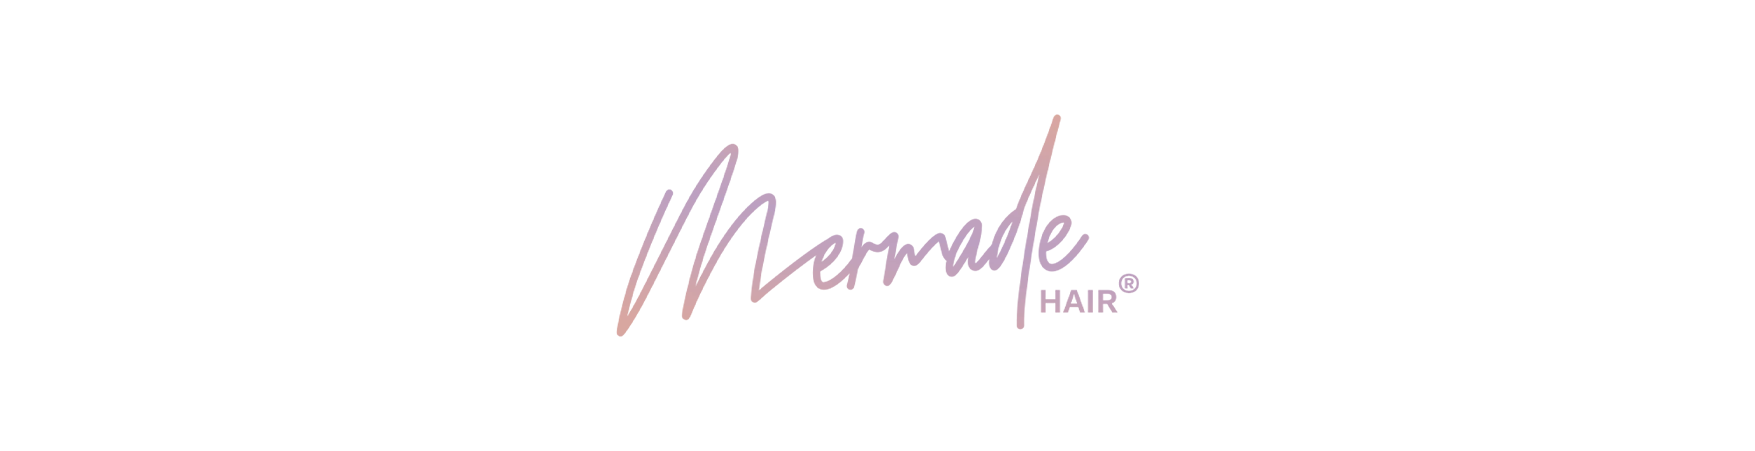 Mermade Hair